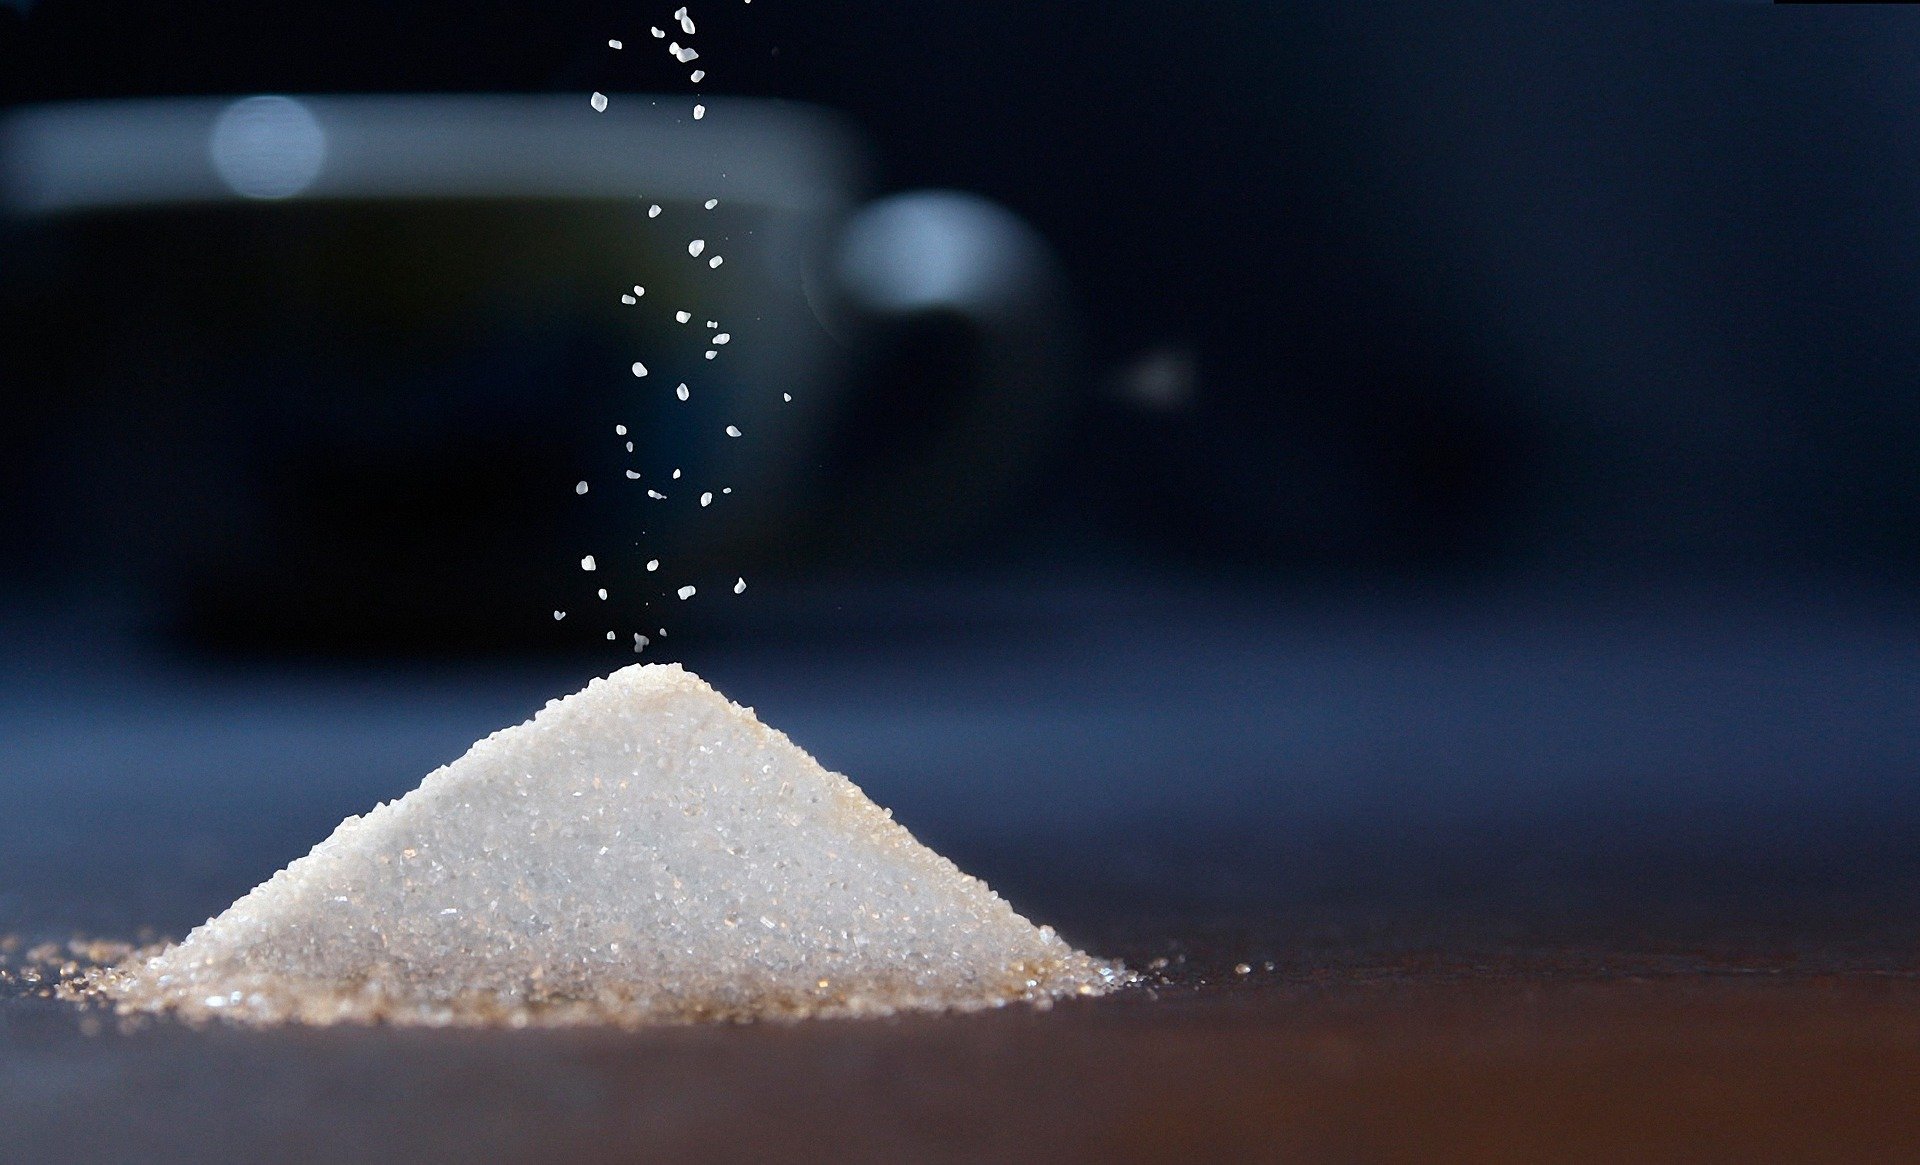 

В Ижевске в магазинах федеральной торговой сети продавали сахар по завышенным ценам

